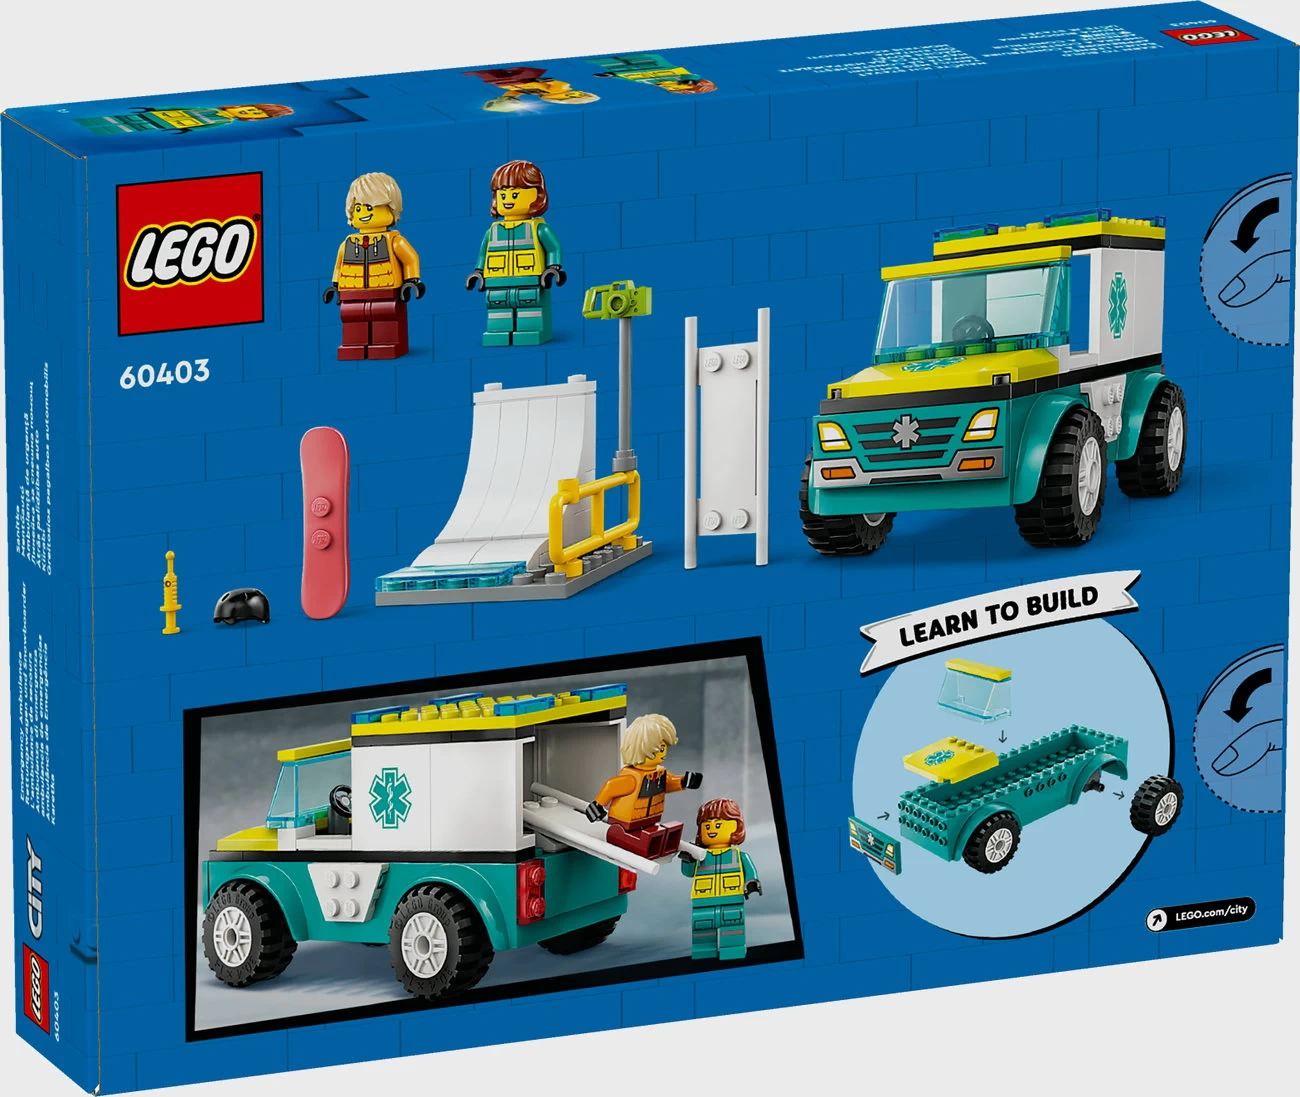 LEGO City 60403 - Rettungswagen und Snowboarder